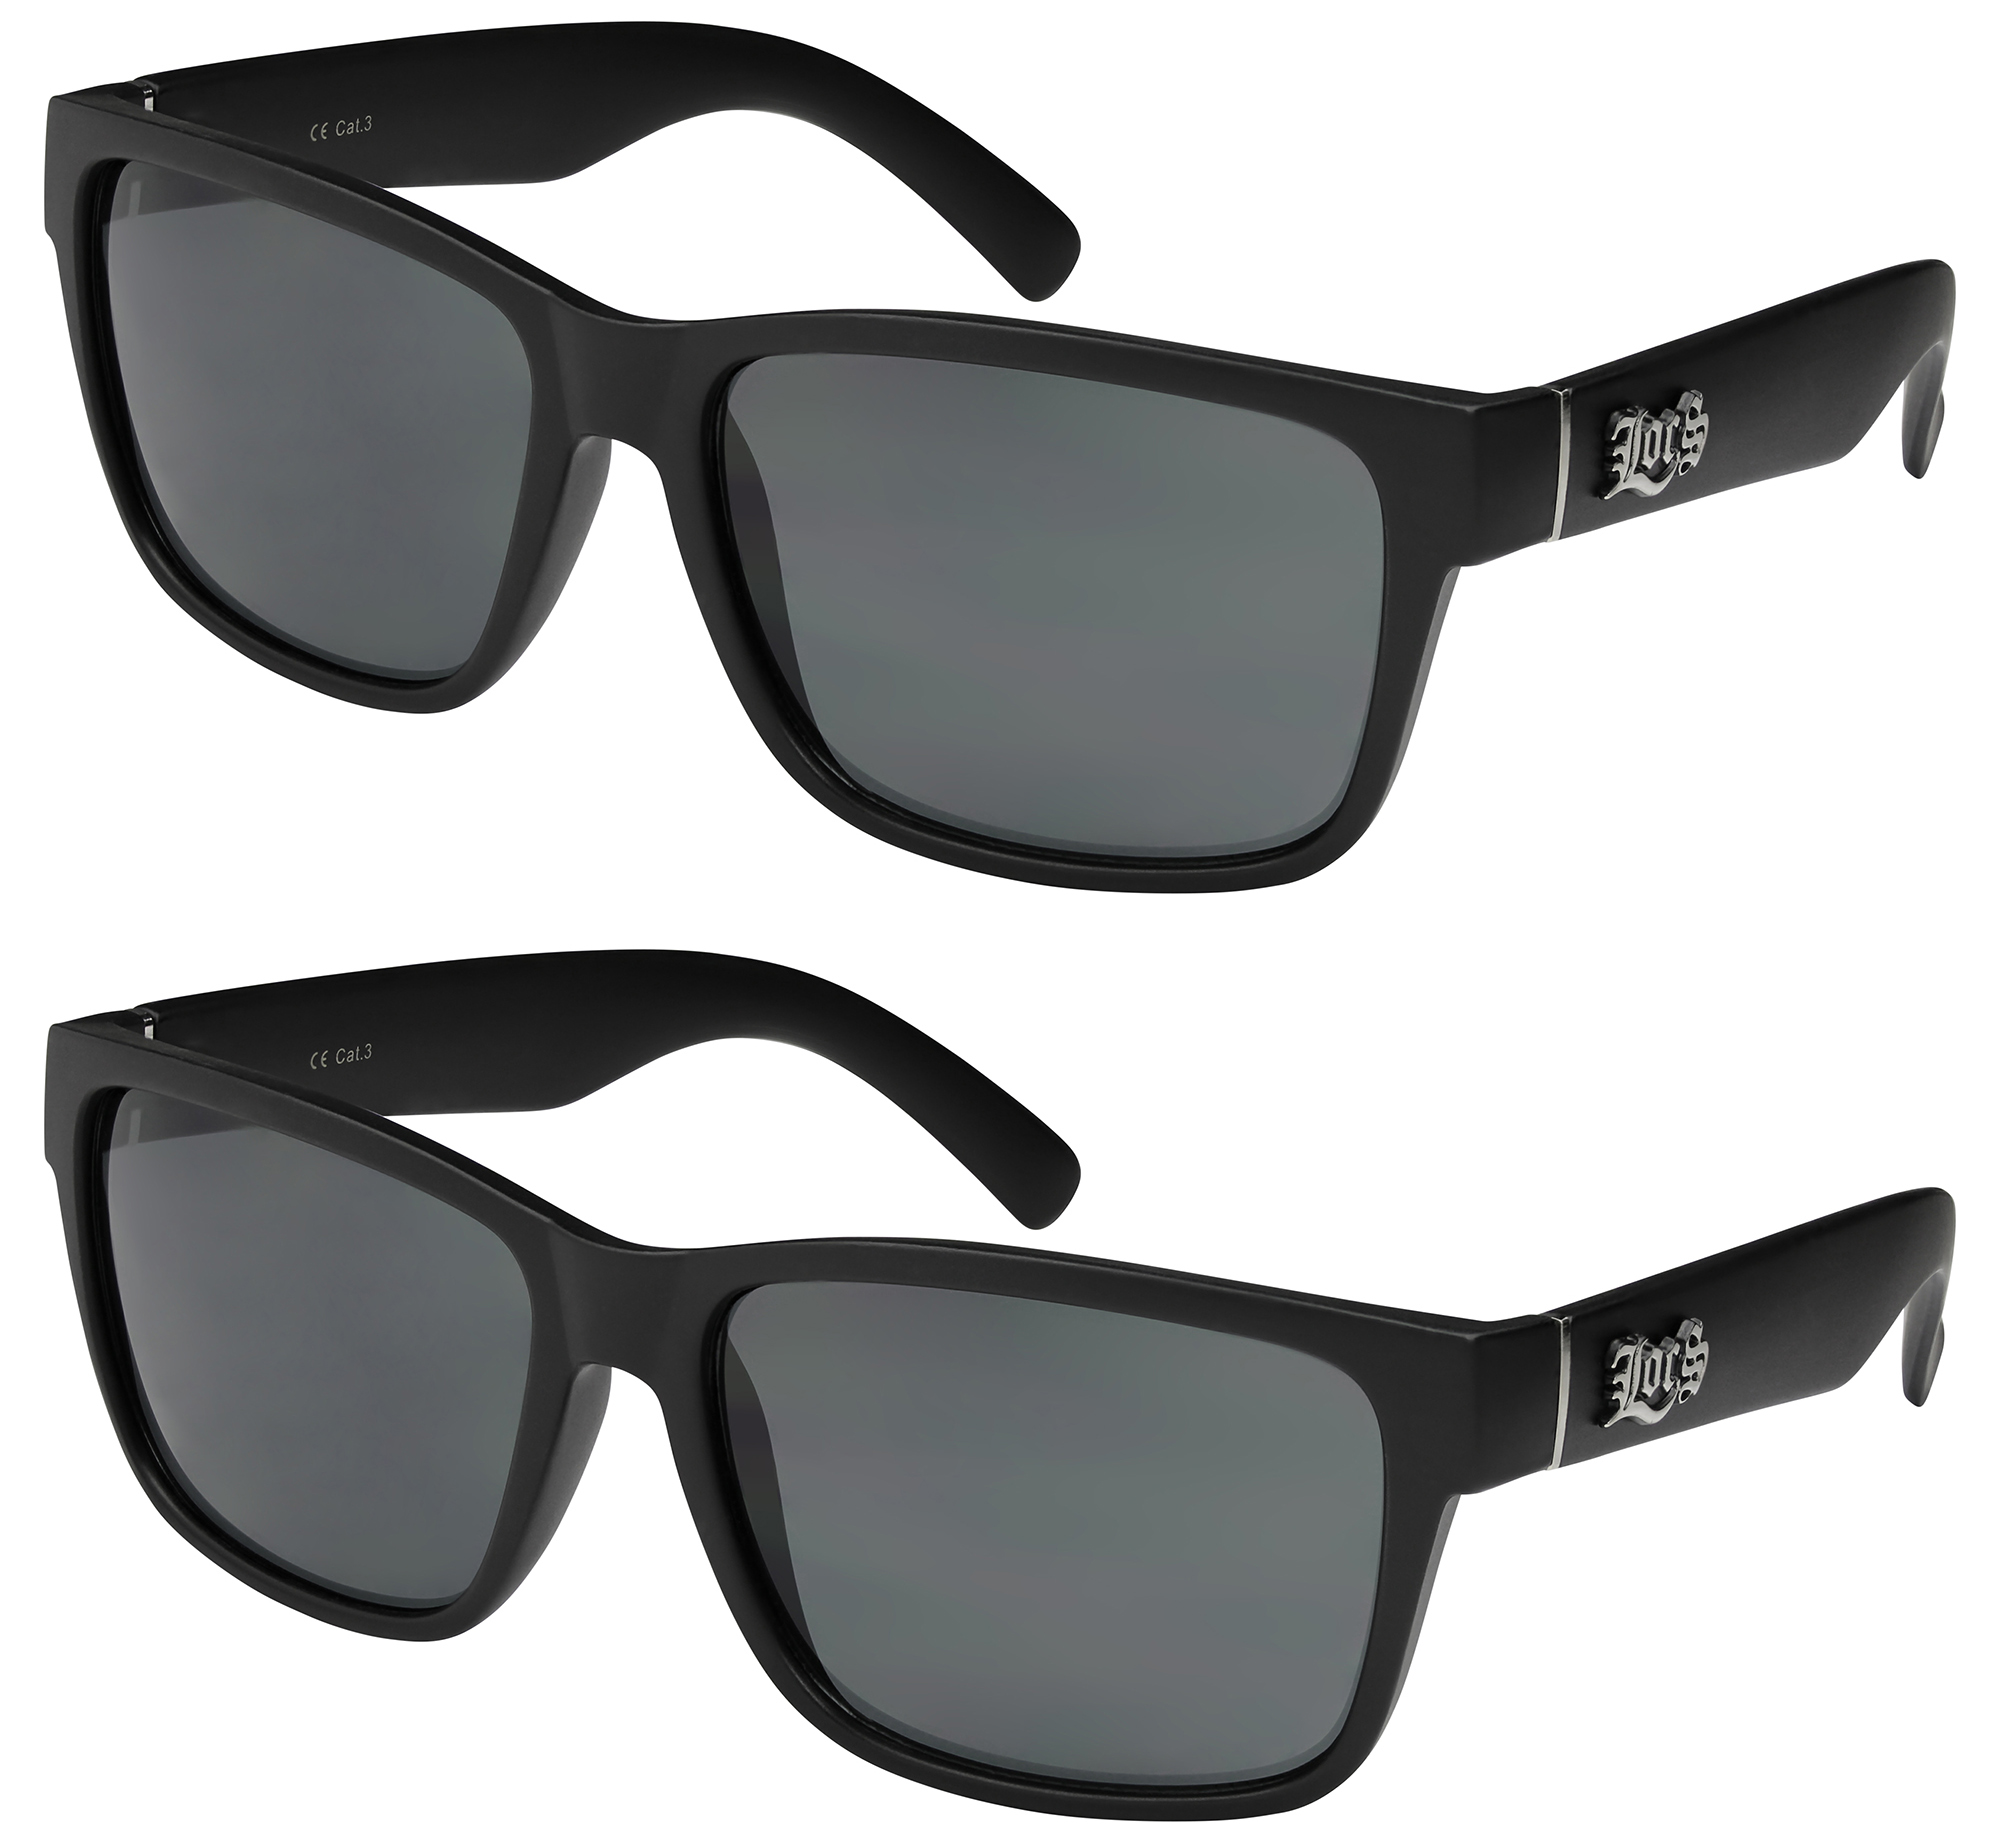 2er Pack Locs 91070 Choppers Sport Brille Sonnenbrille Männer Damen schwarz matt